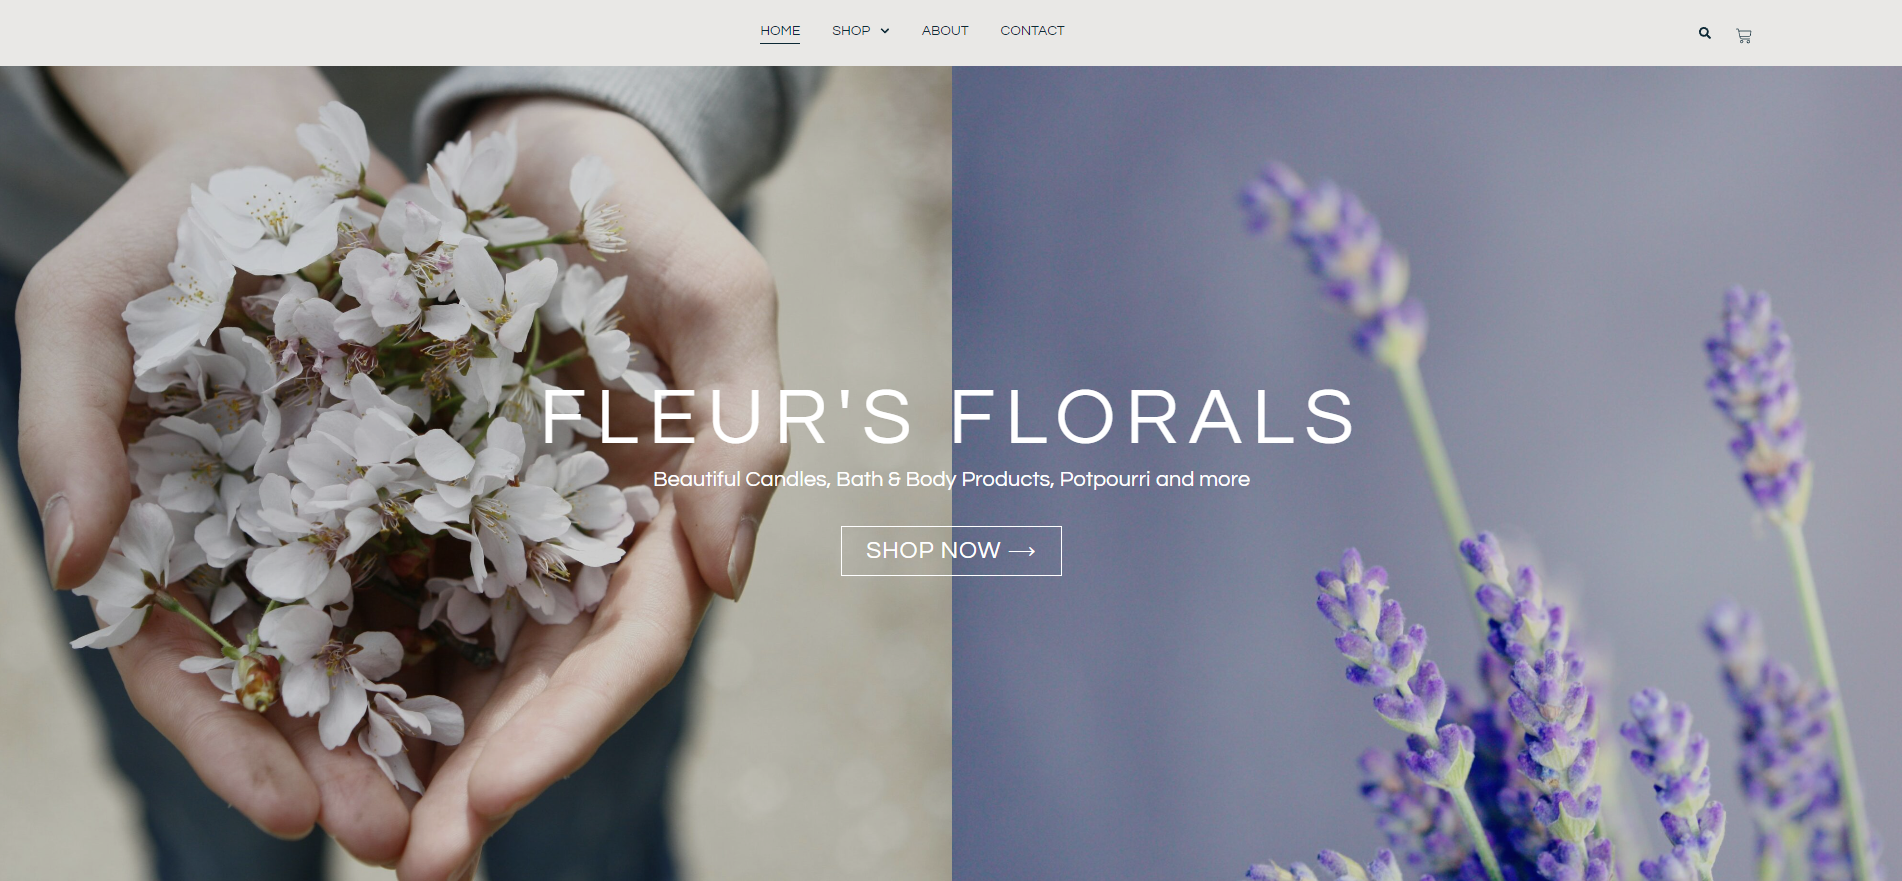 Fleur’s Florals Promotion